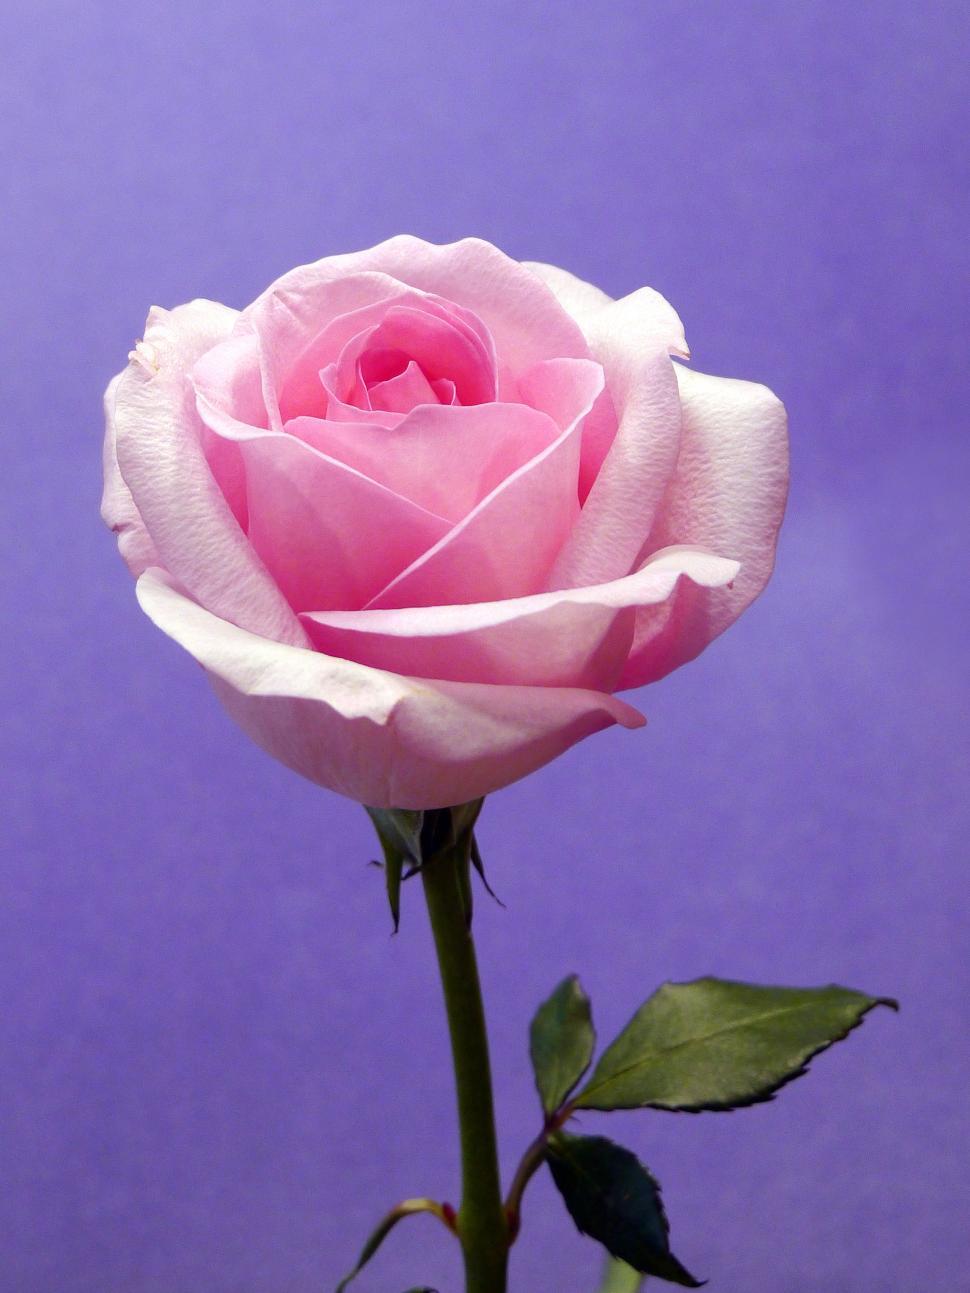 Thưởng thức những hình ảnh hoa hồng tím đầy sắc màu và độc đáo. Các loại hoa hồng tím khác nhau, từ những bông hoa nhỏ nhẹ đến những bông hoa lớn và long lanh, chắc chắn sẽ khiến bạn cảm thấy ngạc nhiên và hài lòng.